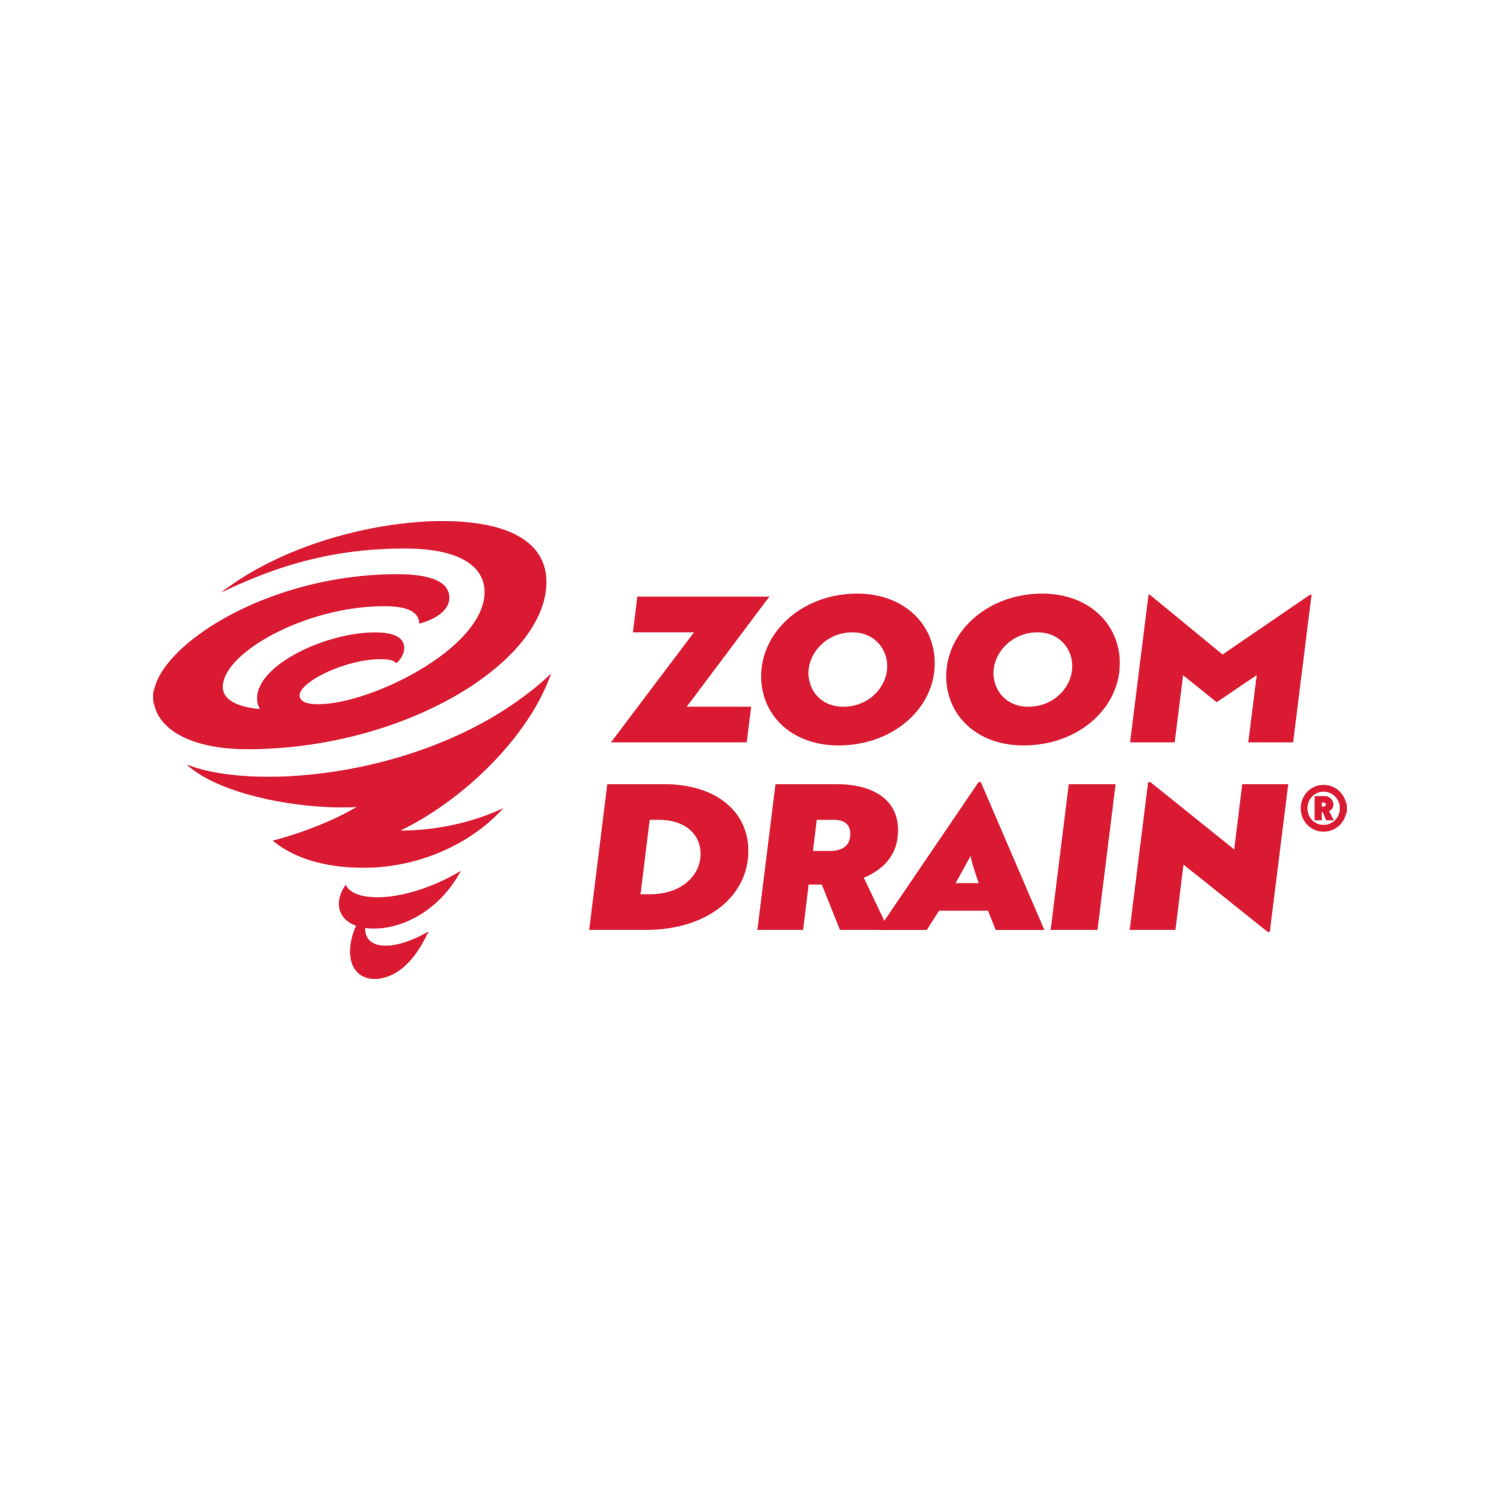 Zoom Drain Richmond VA Logo